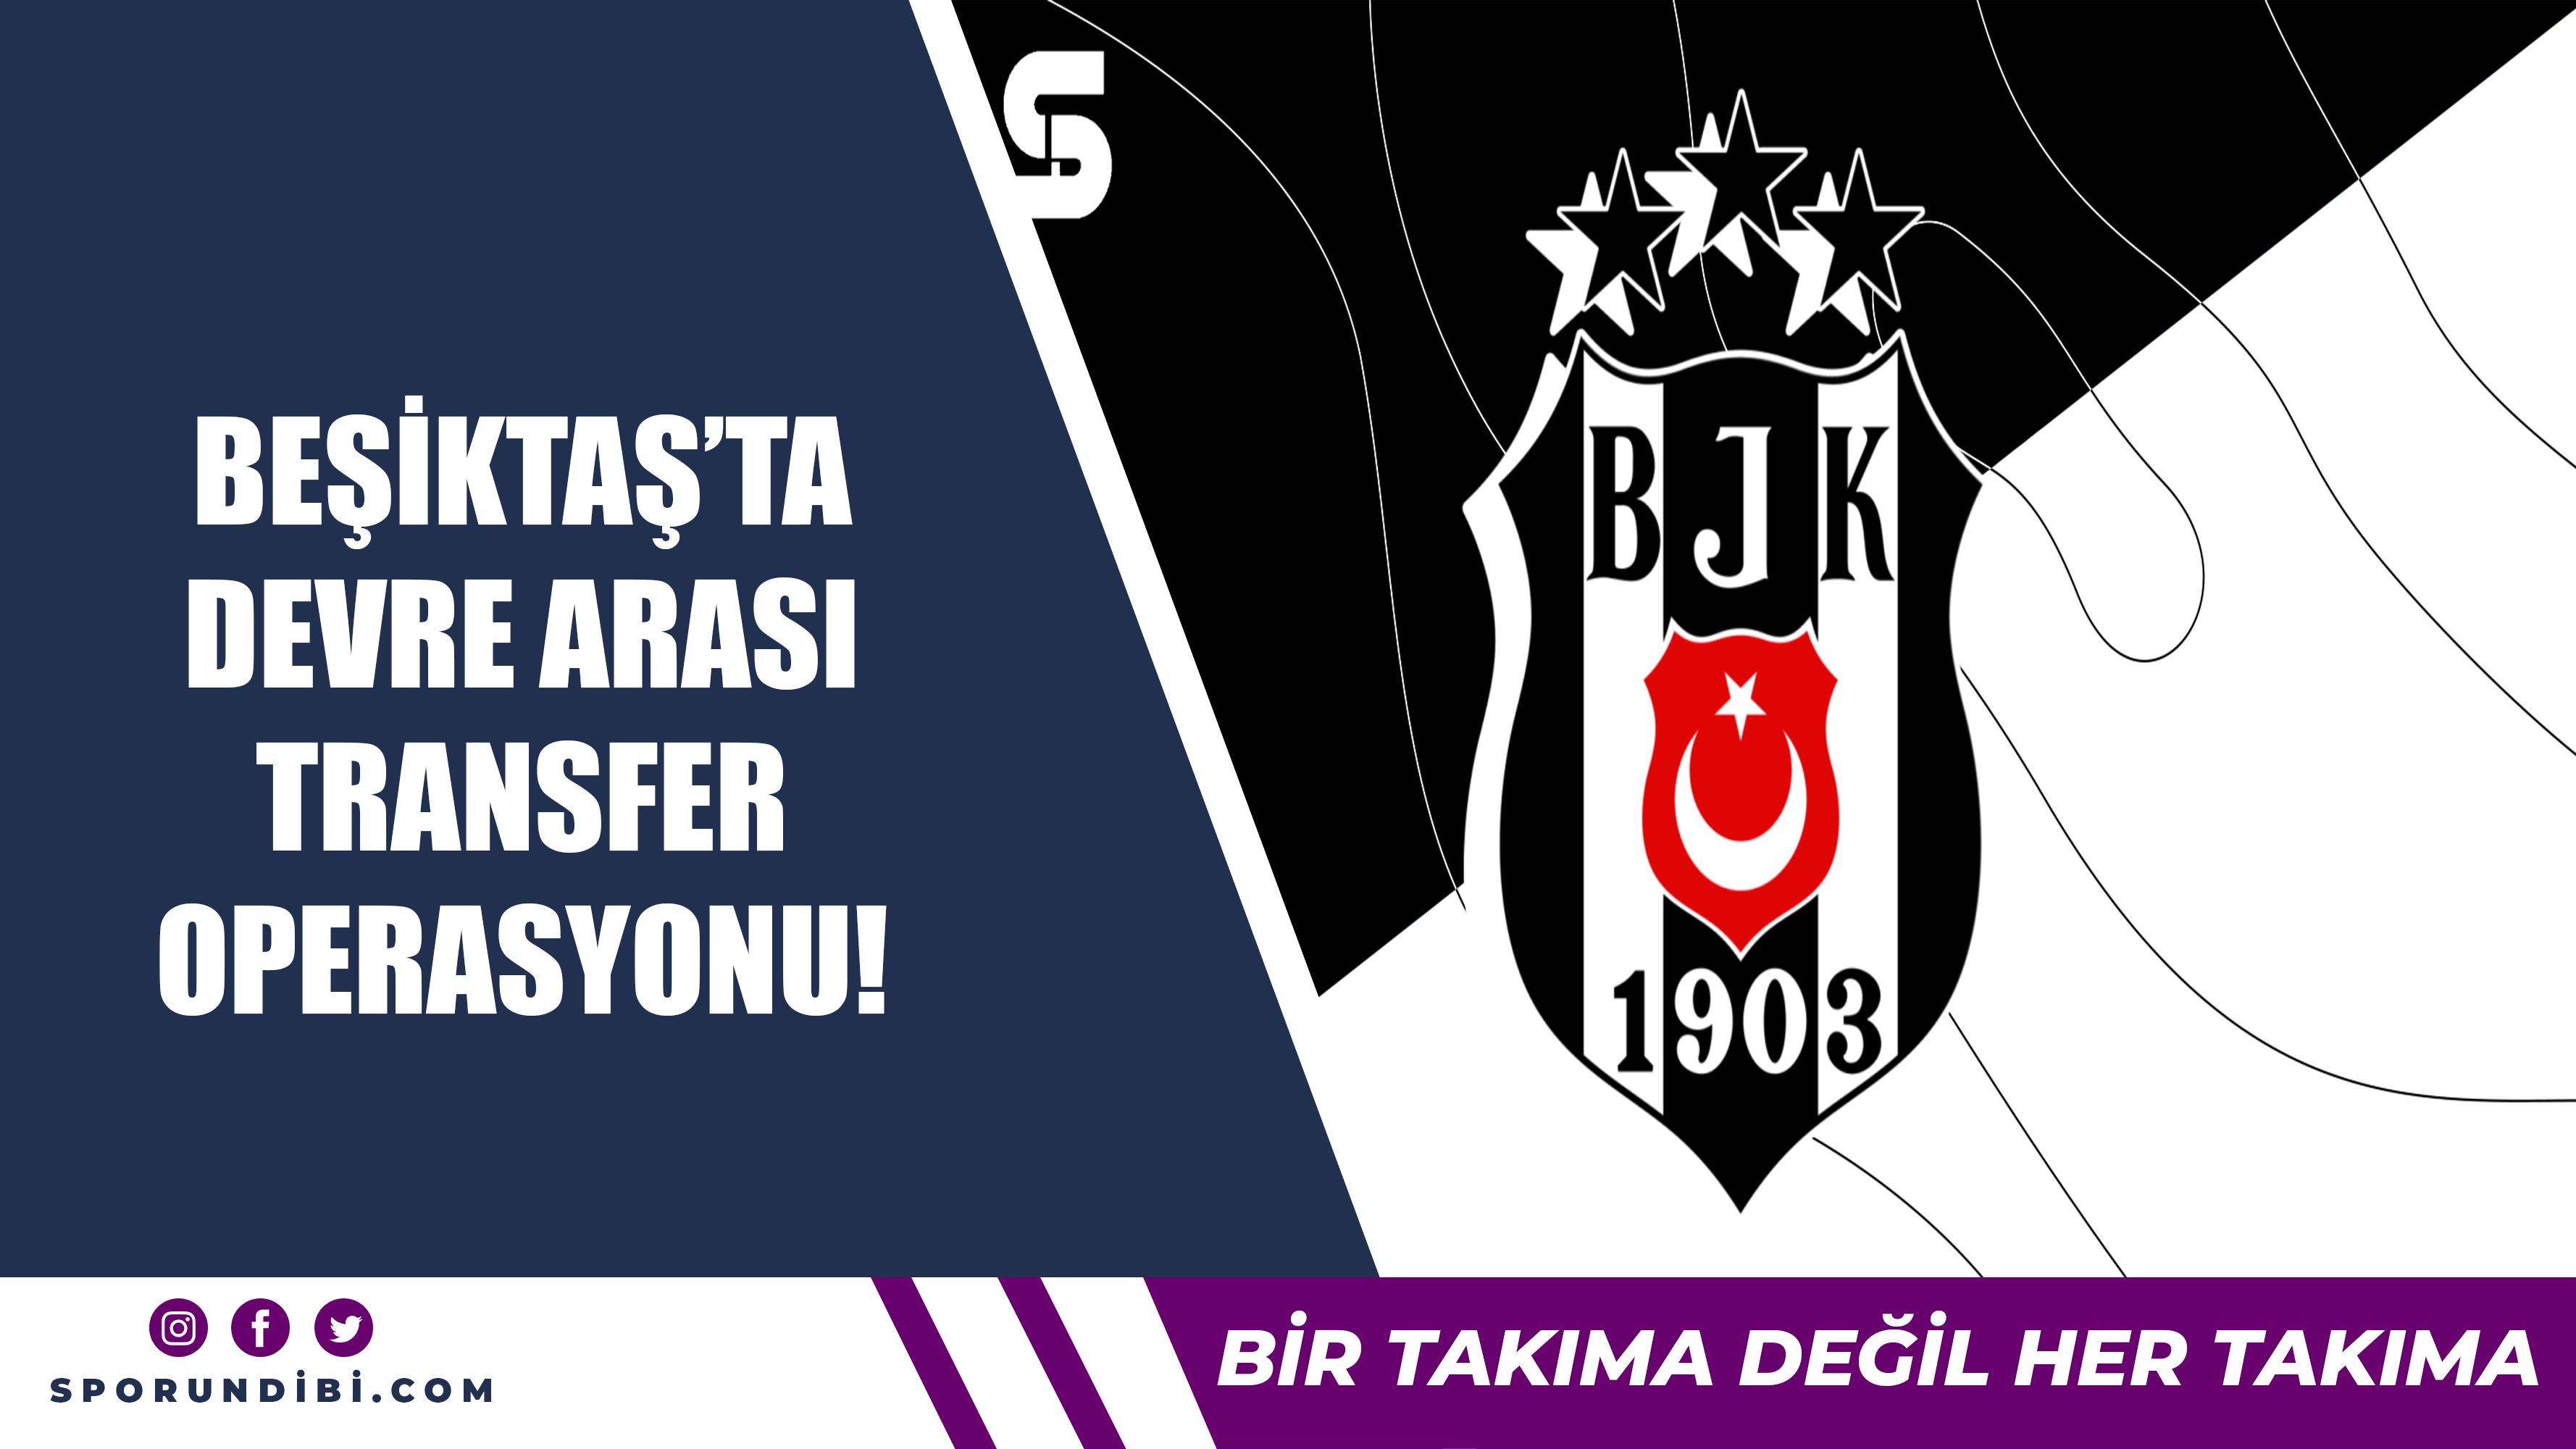 Beşiktaş'ta devre arası transfer operasyonu!